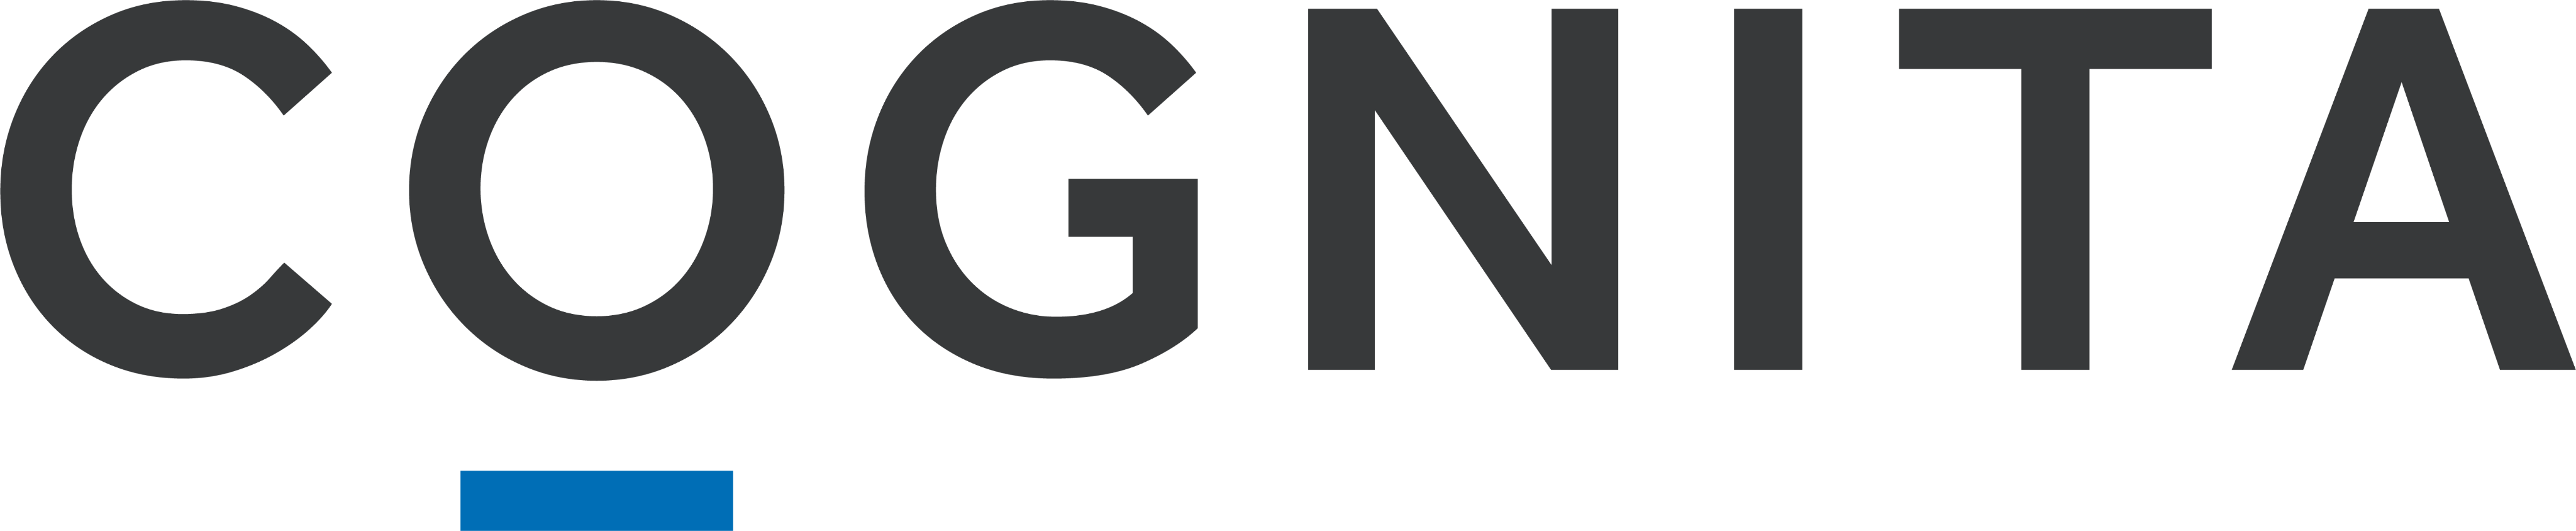 Image of Cognita logo